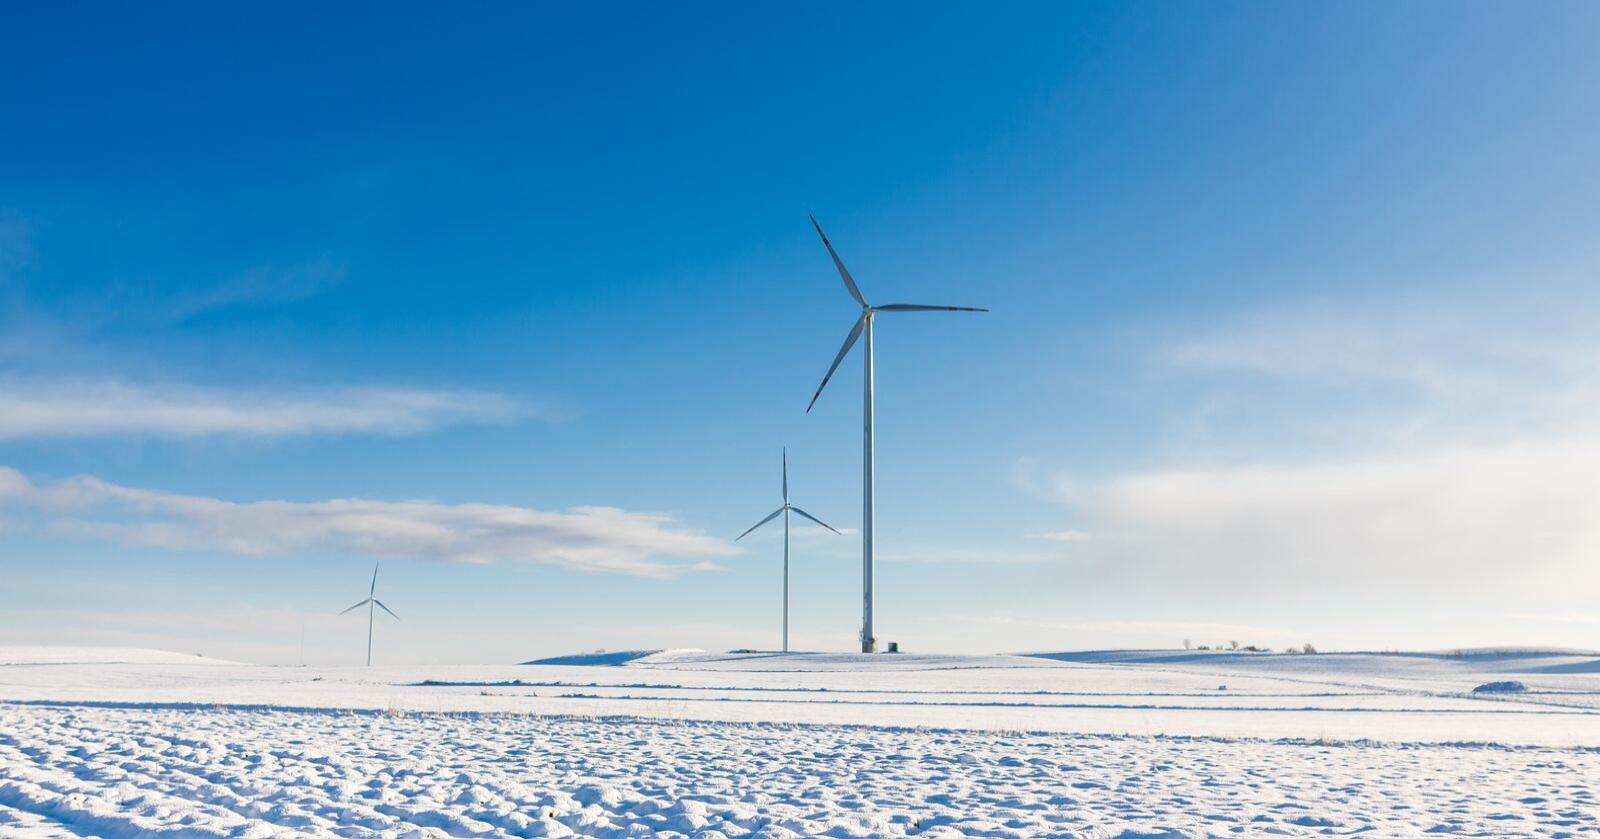 Nødvendig: Vindkraft er ikke et mål i seg selv, men vindkraft er nødvendig for at Norge skal greie å gjennomføre det grønne skiftet, skriver kronikkforfatteren. Foto: Mostphotos